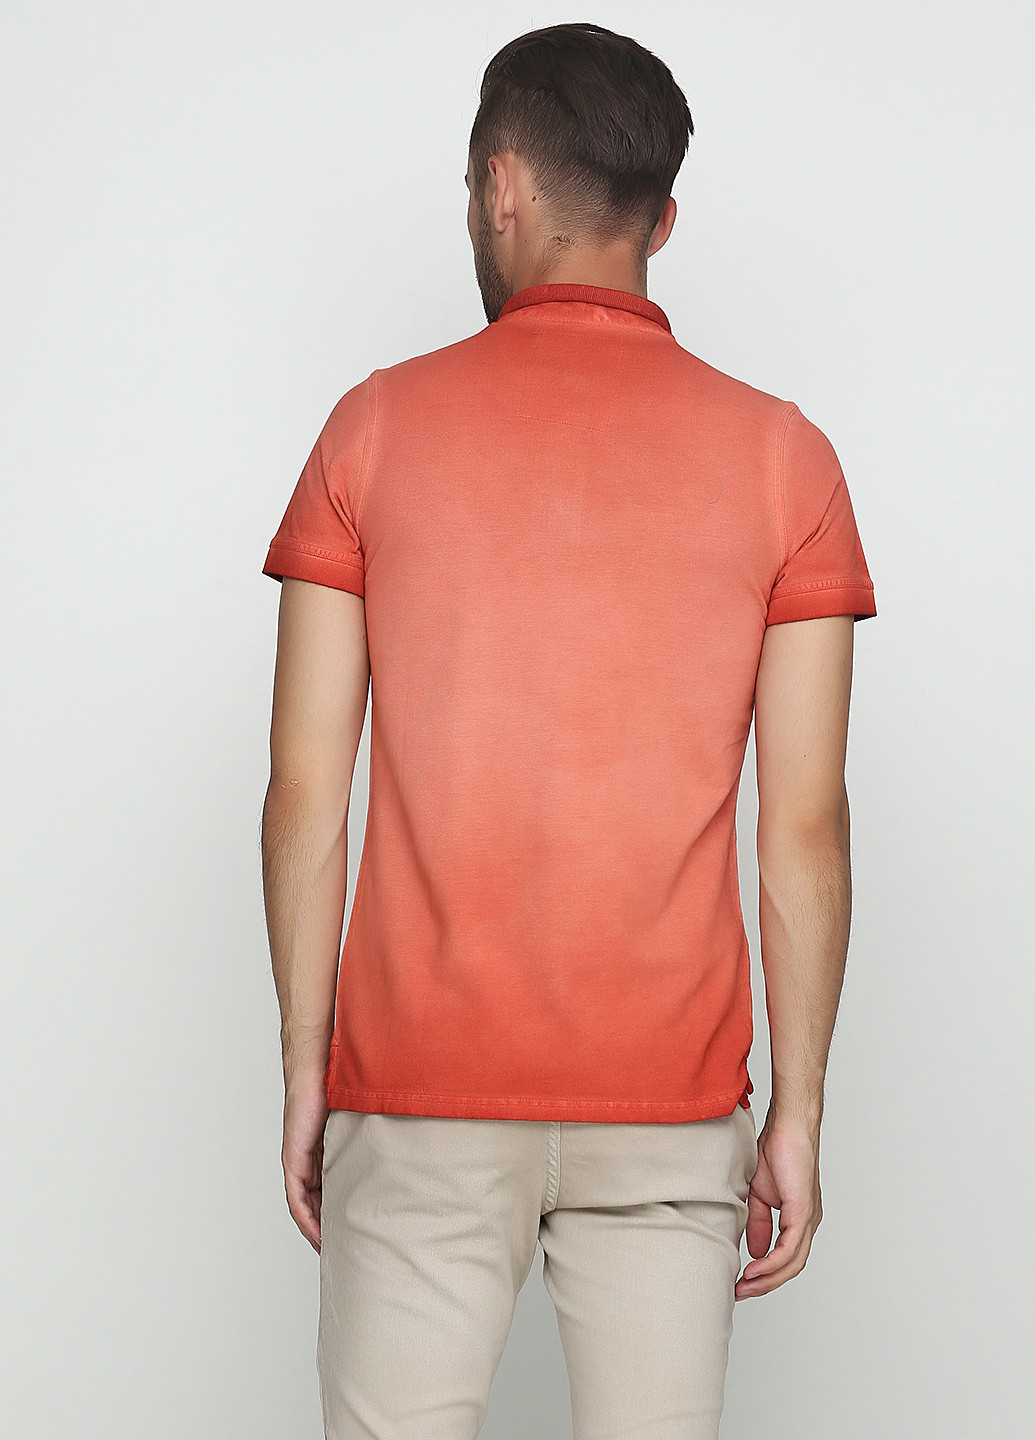 Оранжево-красная футболка-поло для мужчин De Kuba однотонная